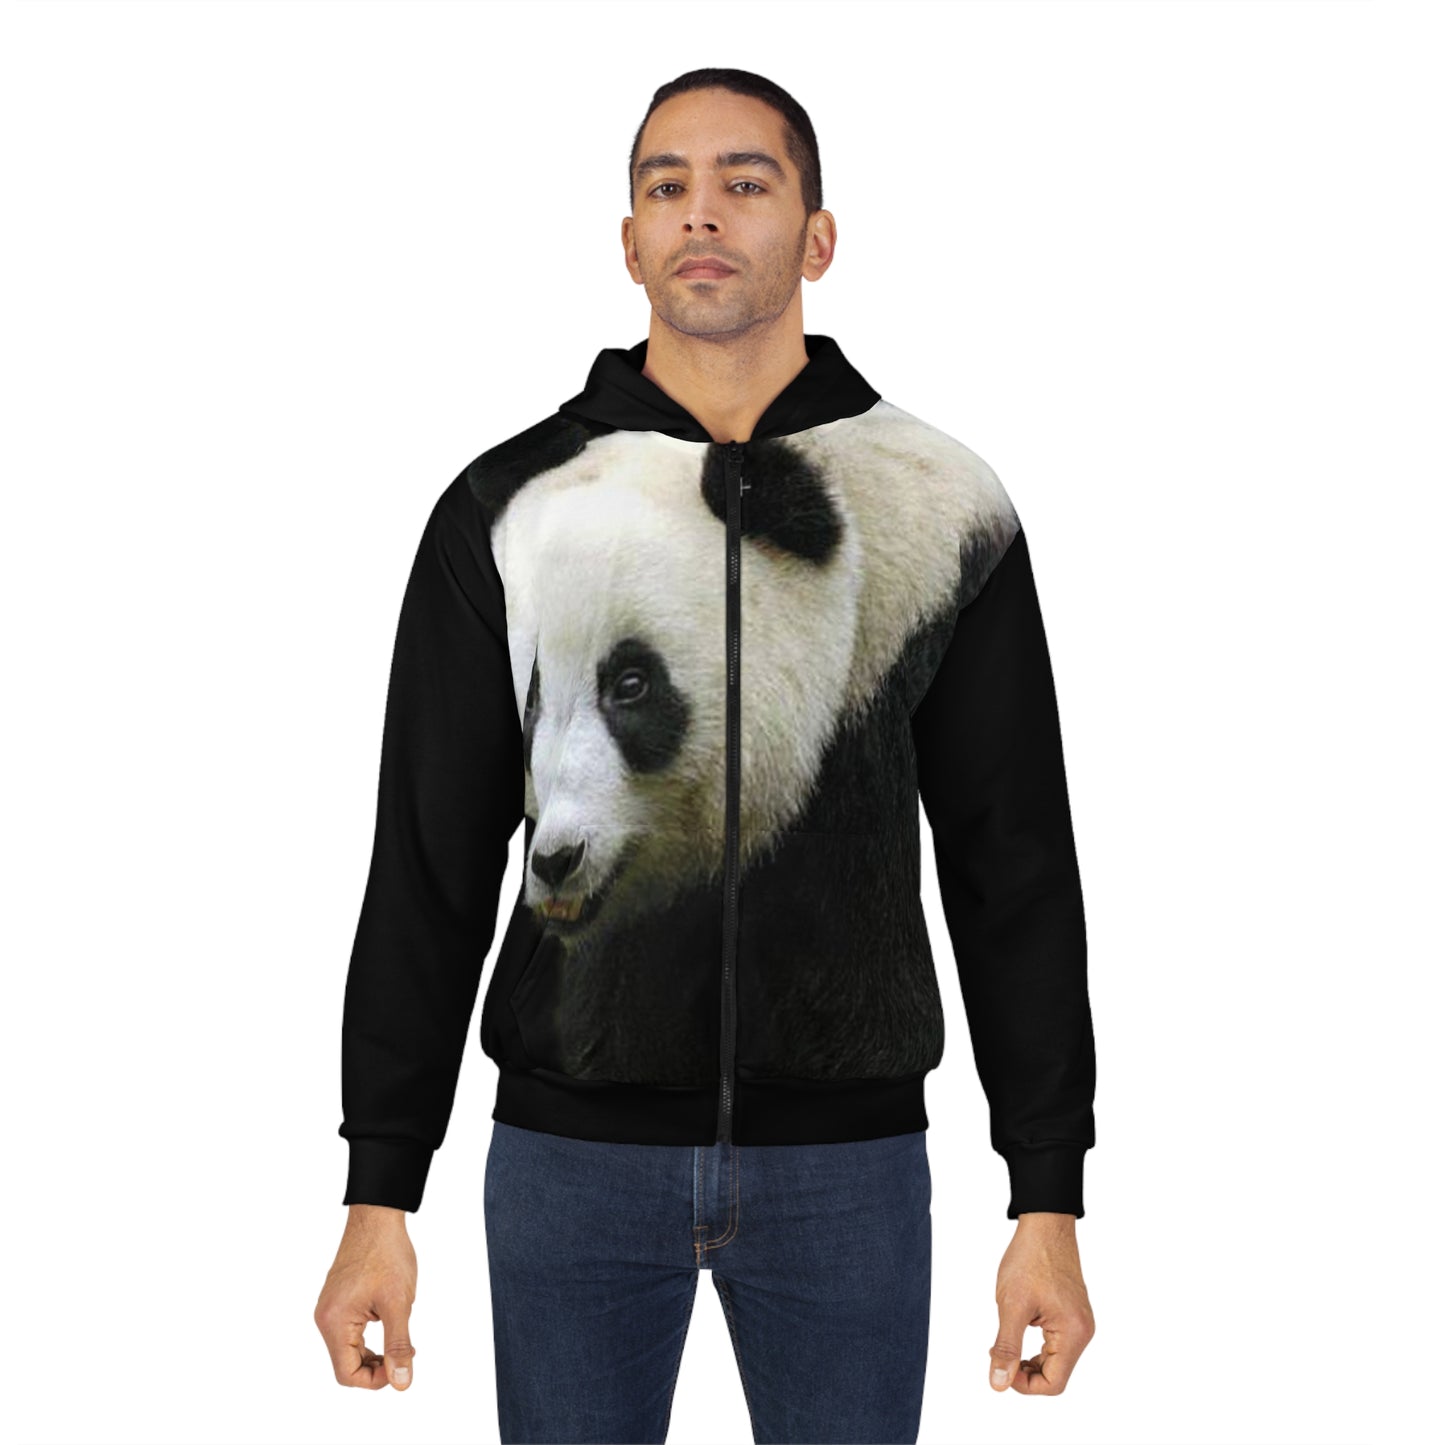 Panda Zipper Jacket